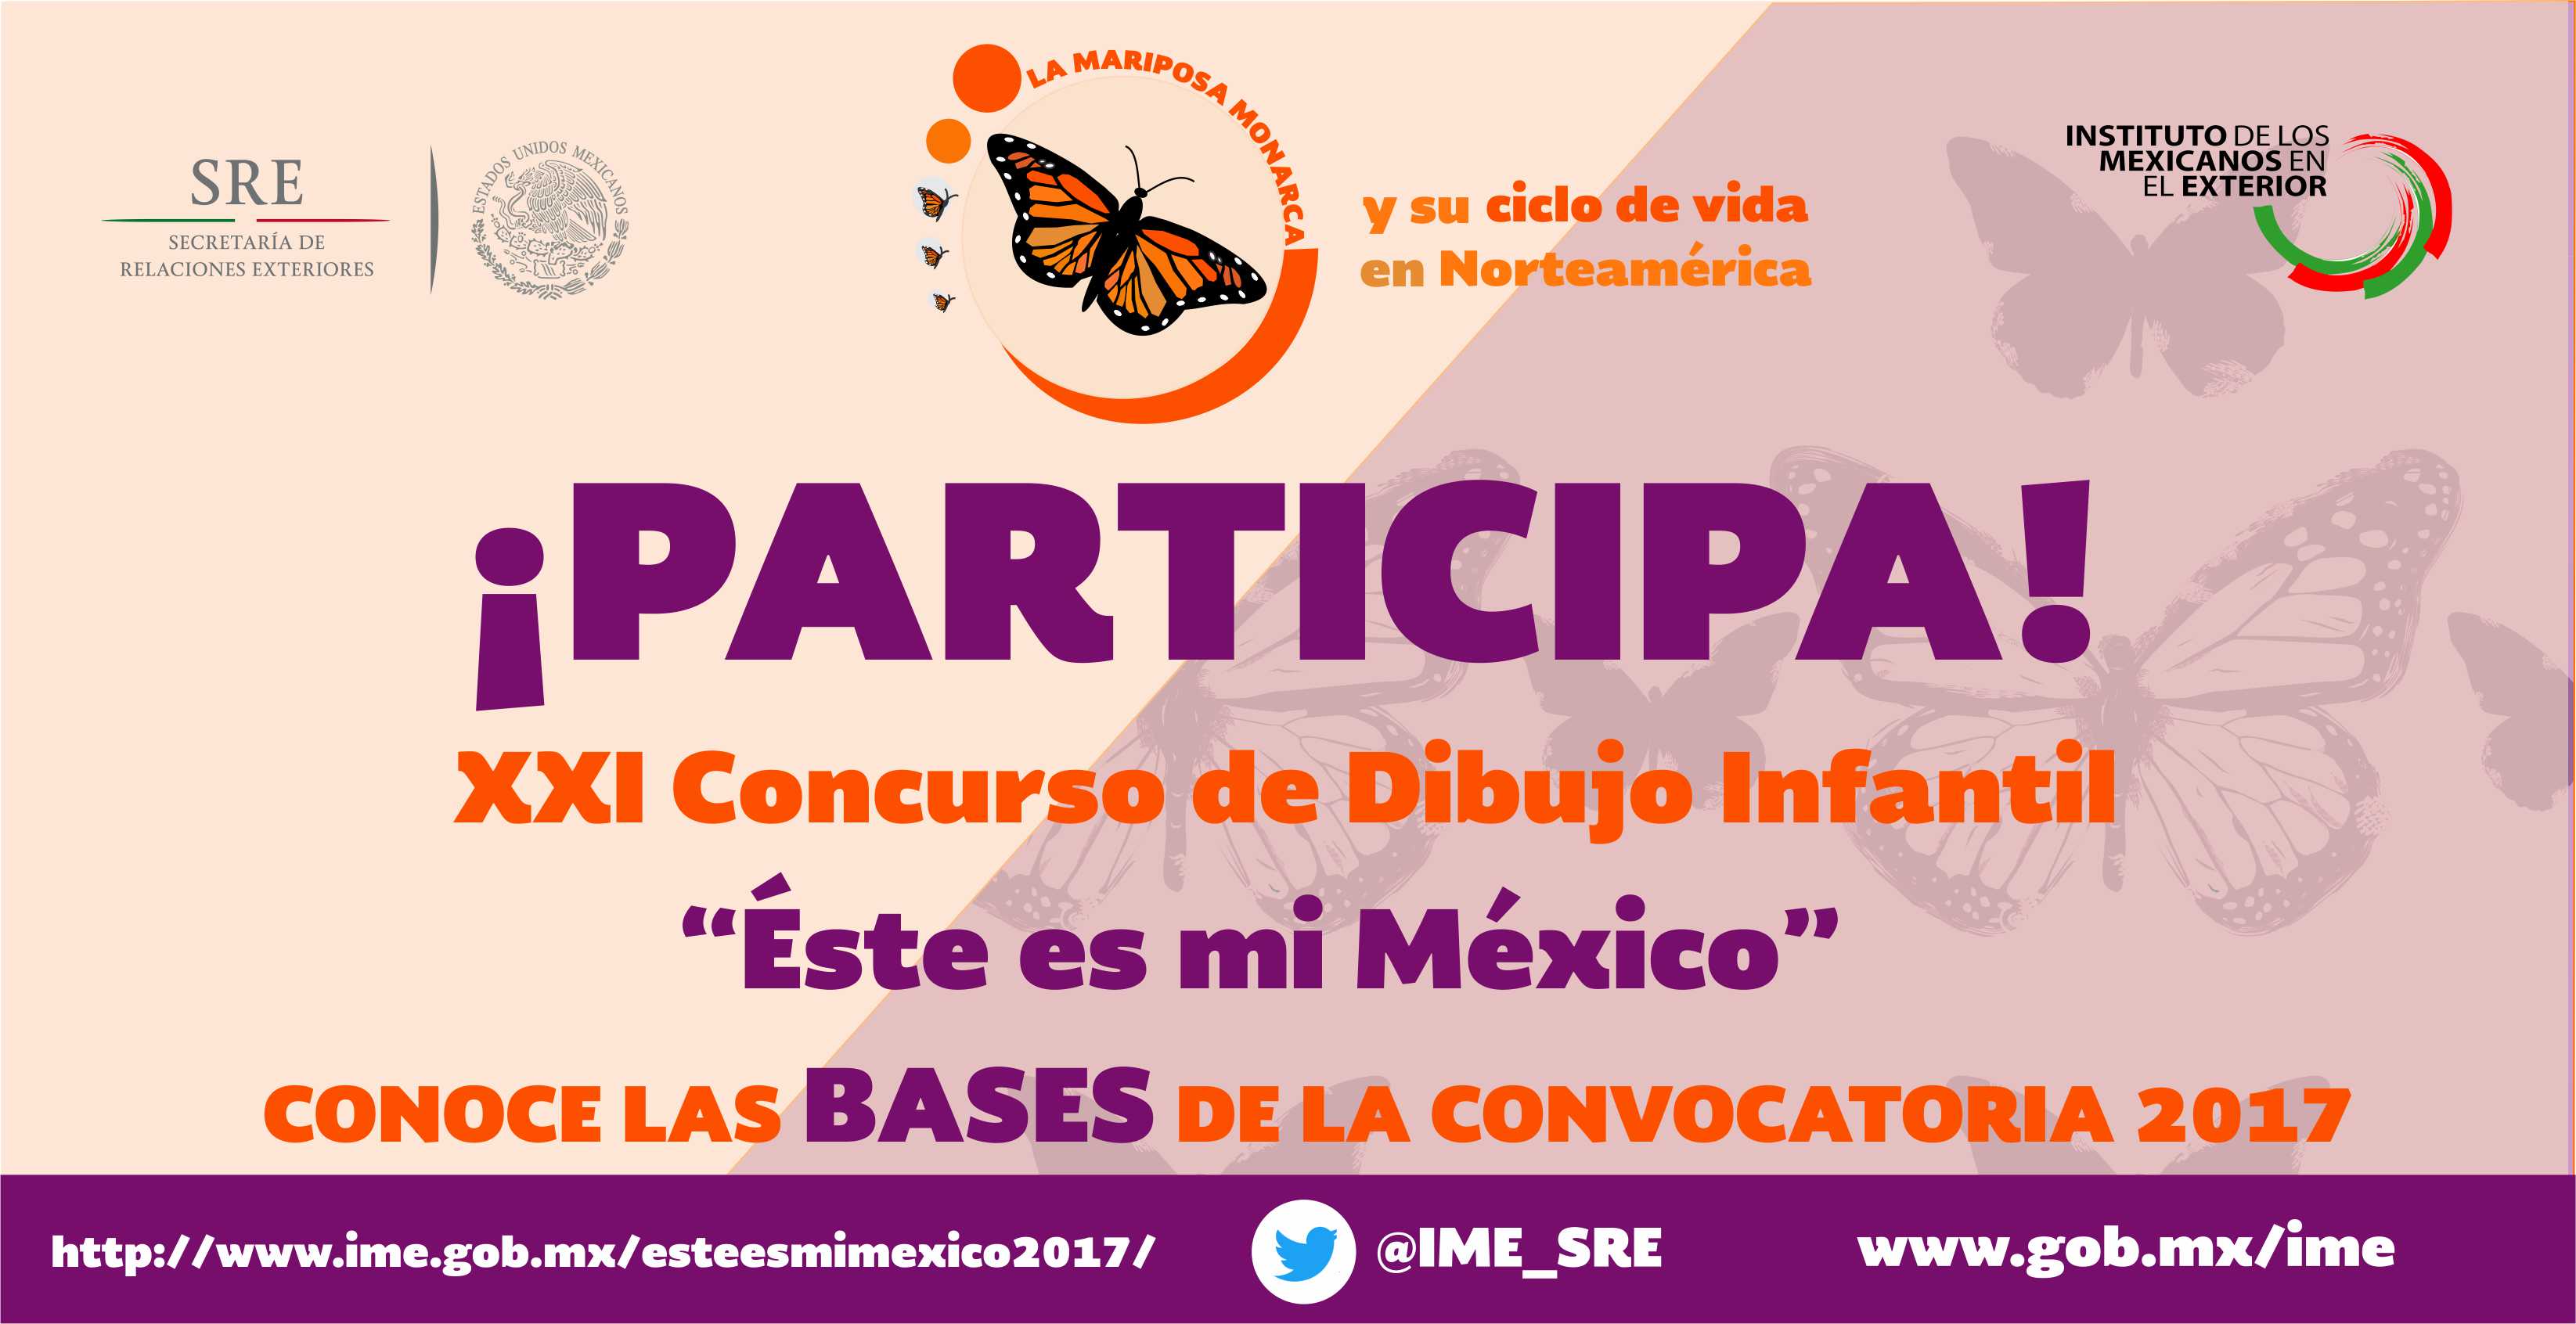 Lanzamiento de la convocatoria del Concurso Infantil "Este es mi México" con el motivo de La Mariposa Monarca y su ciclo del vida en norteamérica.